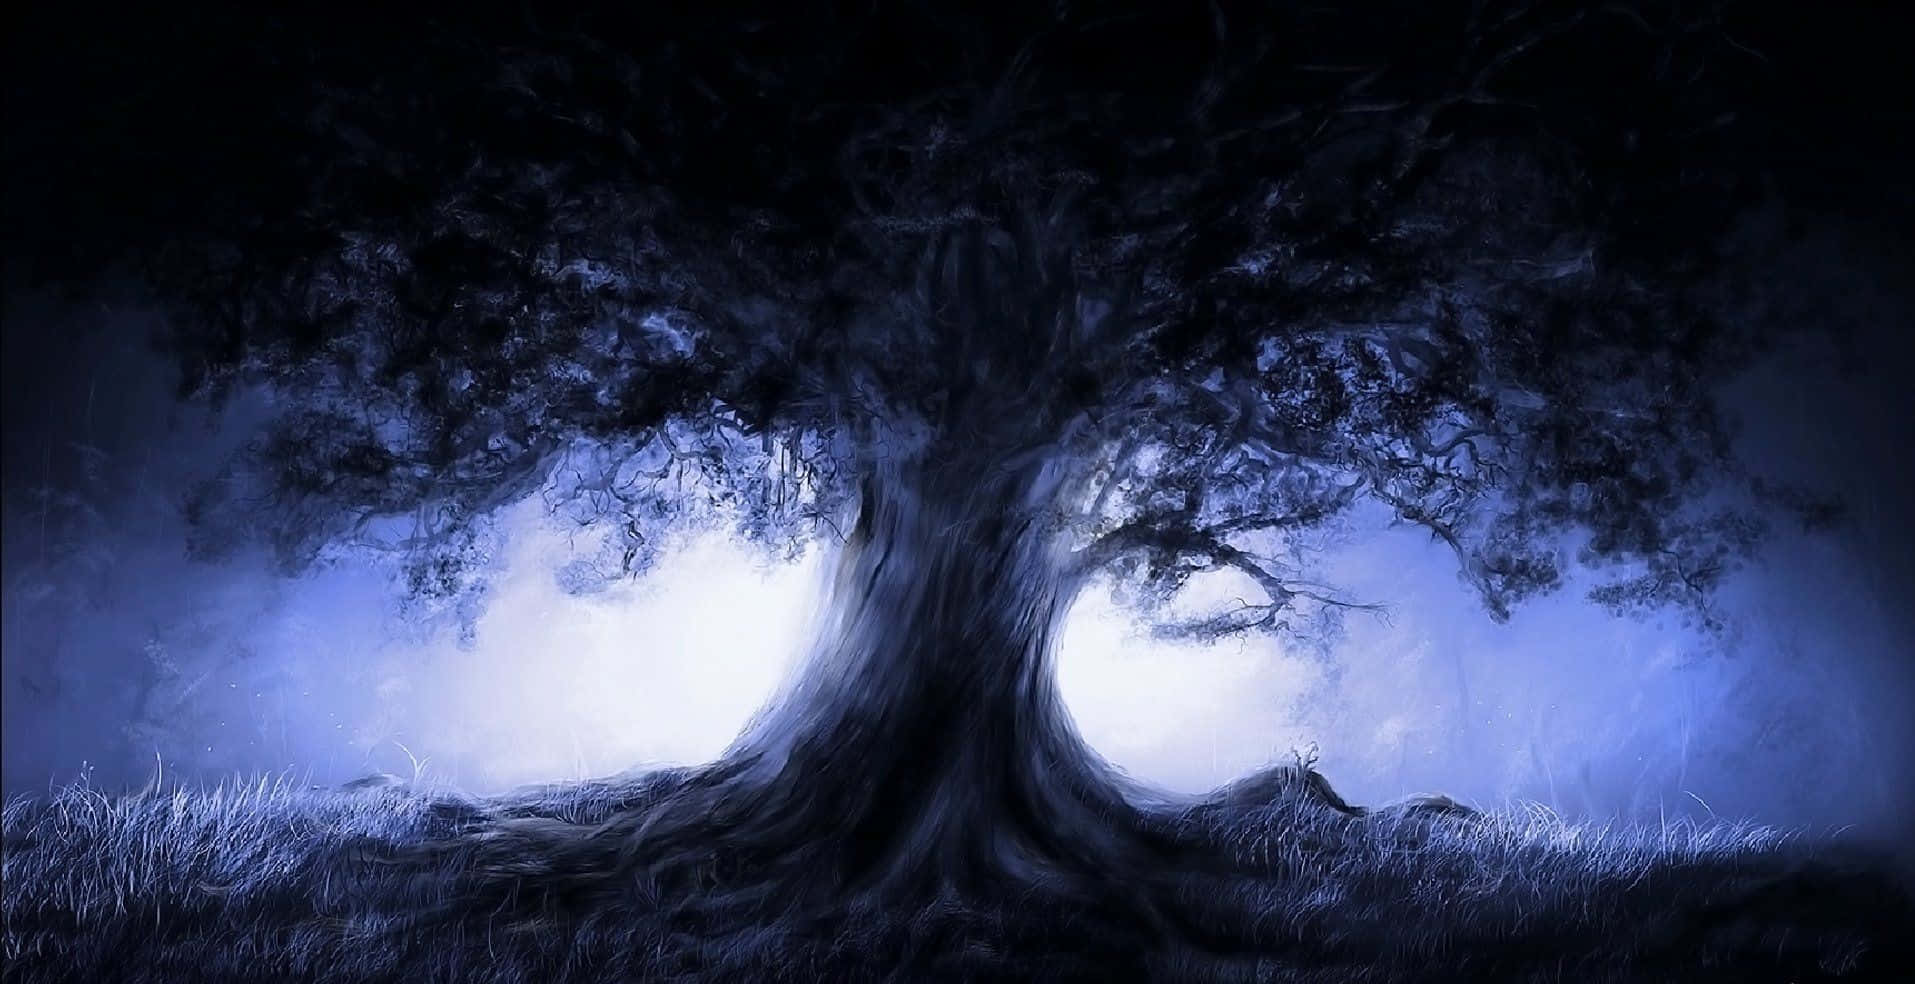 Eingemälde Von Einem Baum Im Dunkeln